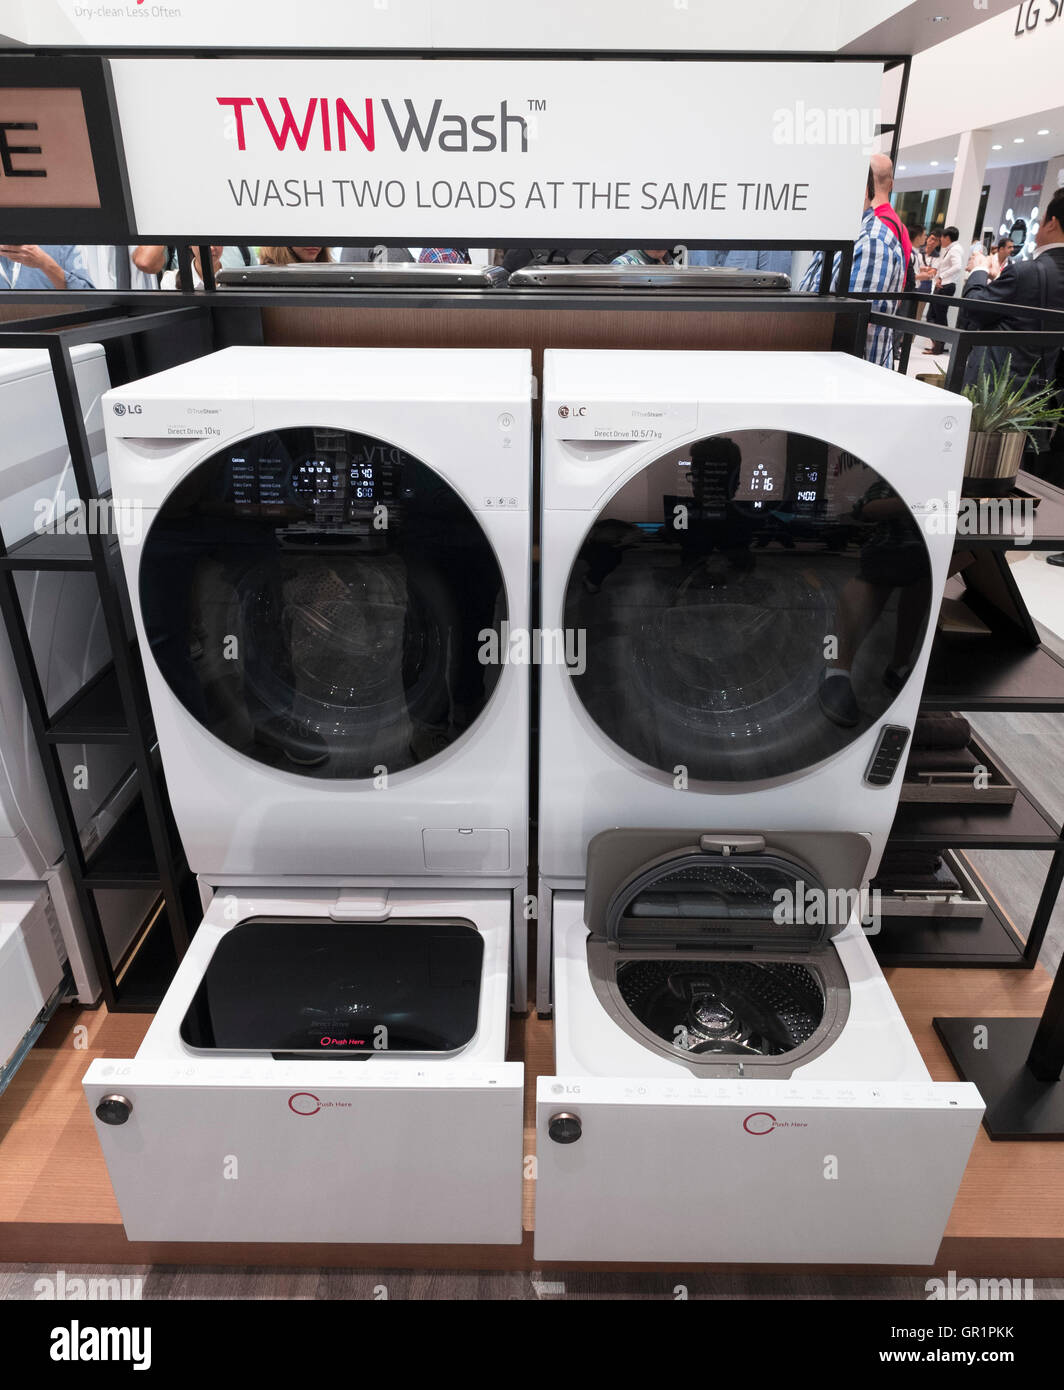 LG Twinwash lavadora con doble tambor de lavado y simultáneo en 2016 IFA (Internationale Funkausstellung Ber Fotografía de -